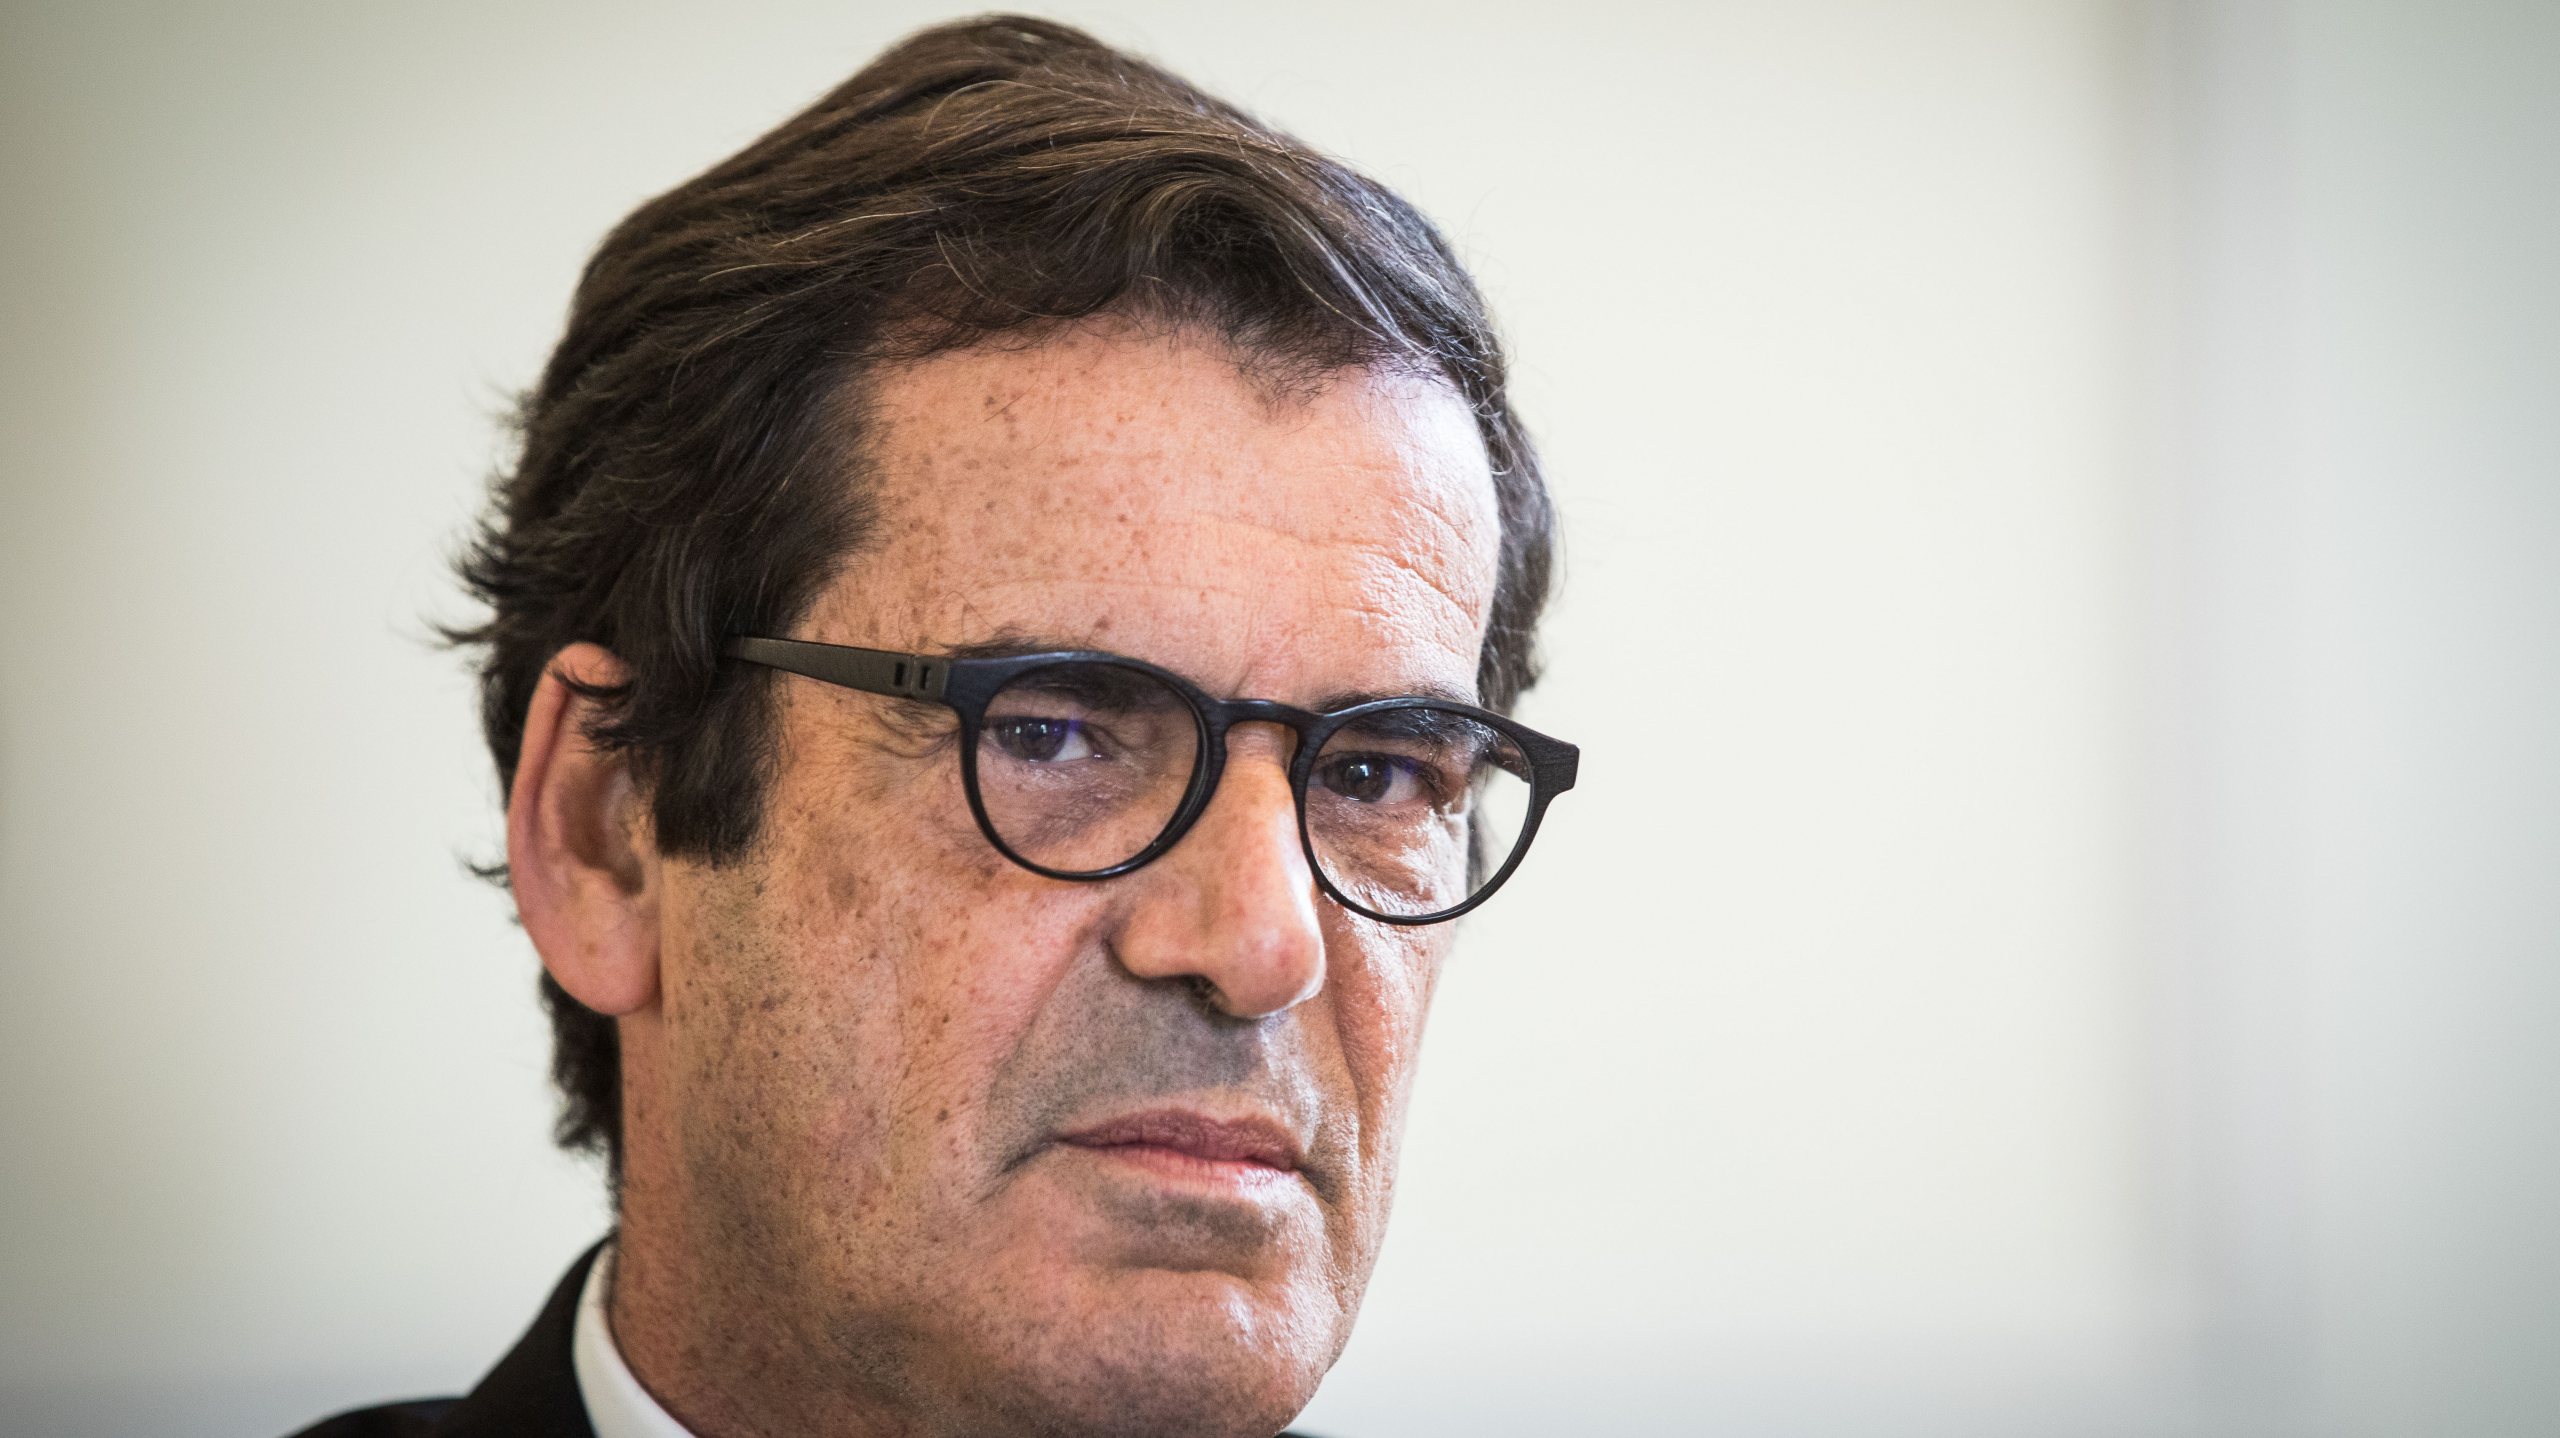 Rui Moreira, presidente da autarquia do Porto desde outubro de 2013, arrisca-se a perder o mandato e irá aguardar julgamento em liberdade